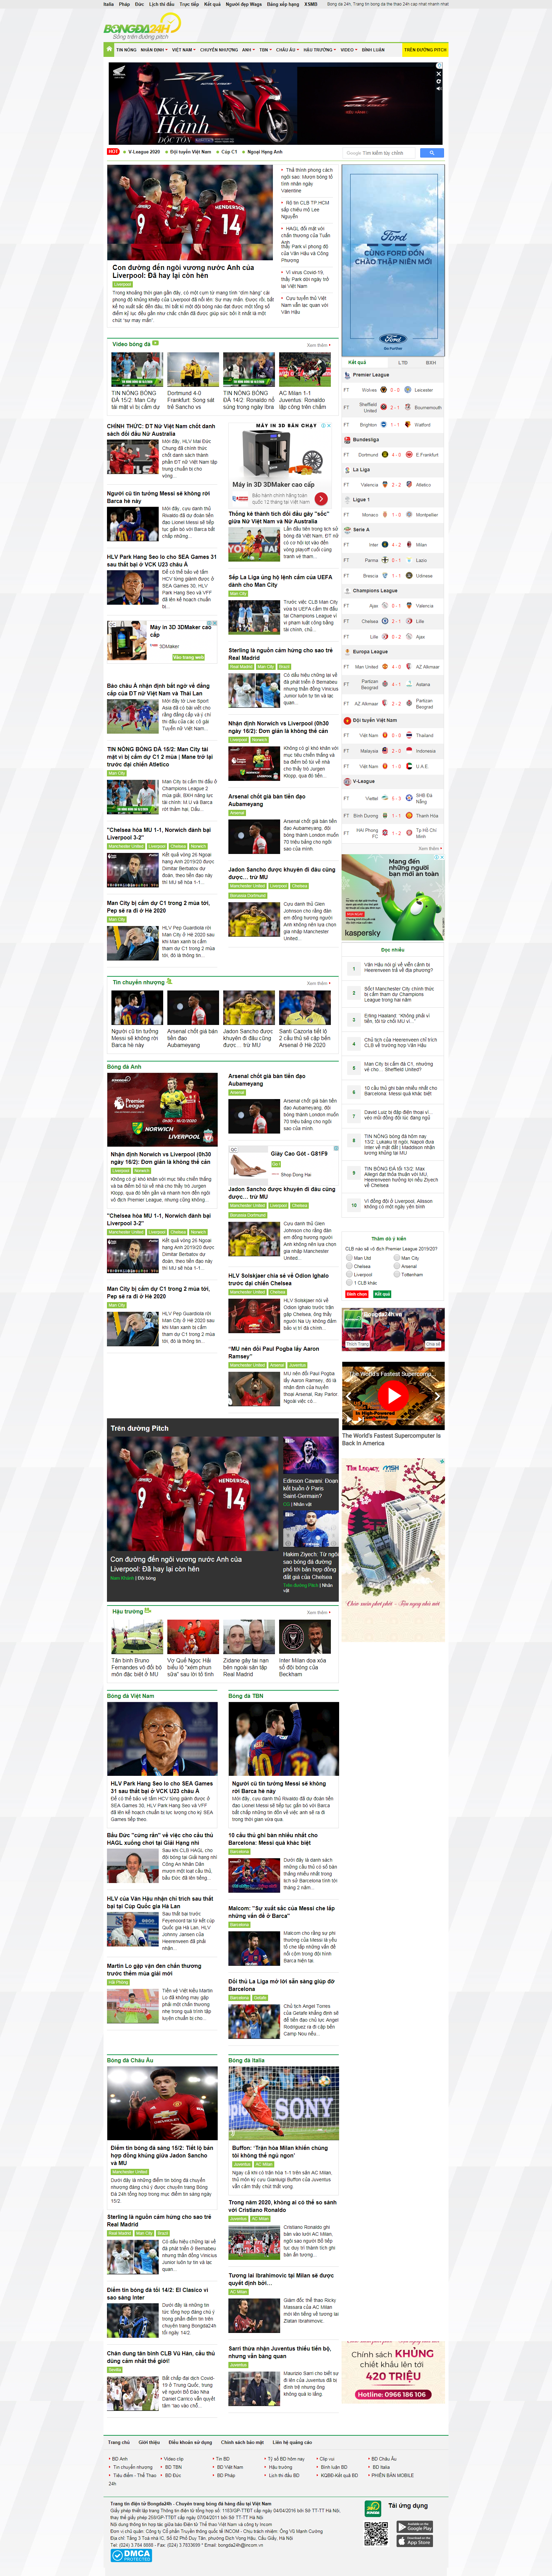 Thiết kế Website bóng đá - bongda24h.vn